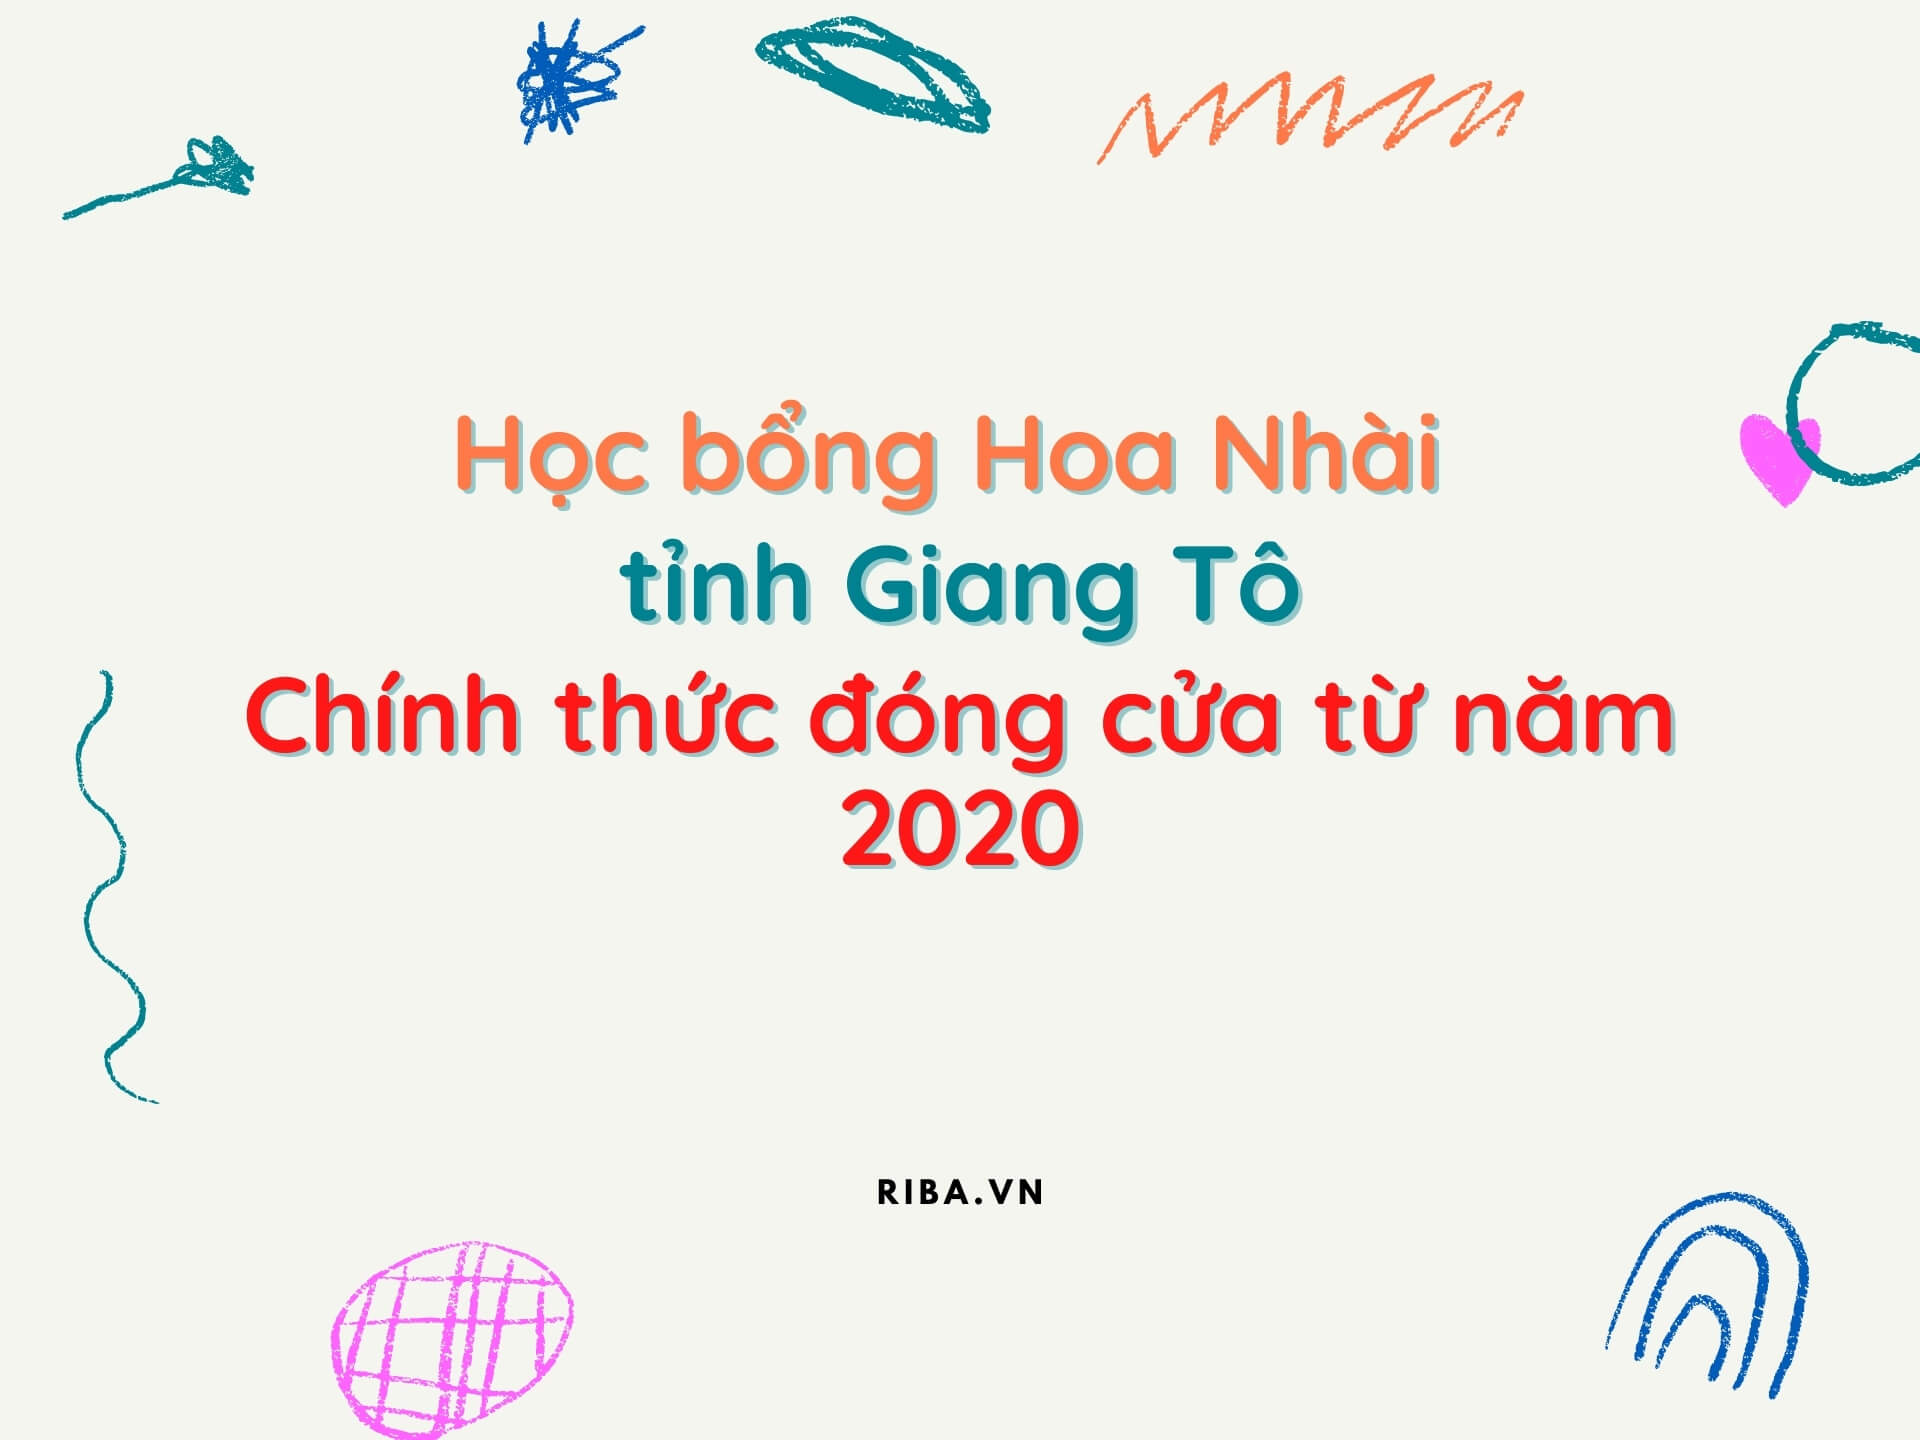 Chính thức dừng cấp Học bổng Hoa Nhài từ năm 2020 - Riba.vn